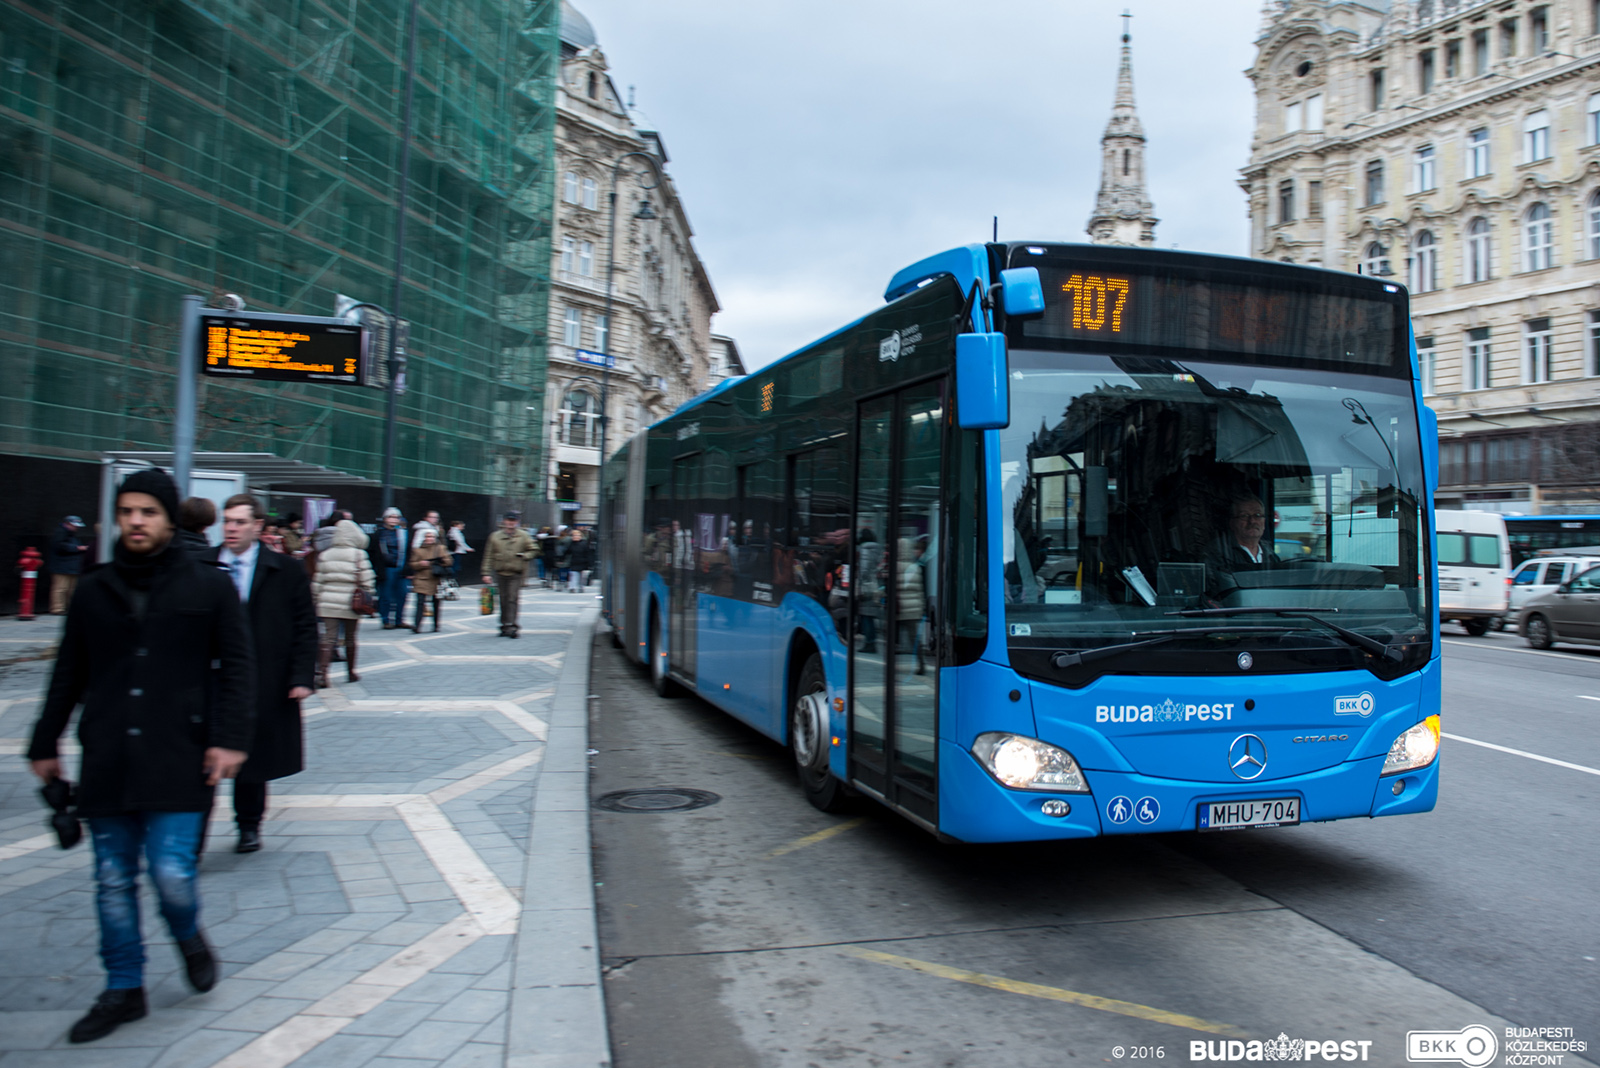 Novembertől az új 107-es buszjárat teremt kapcsolatot a BudaPart és a belváros között